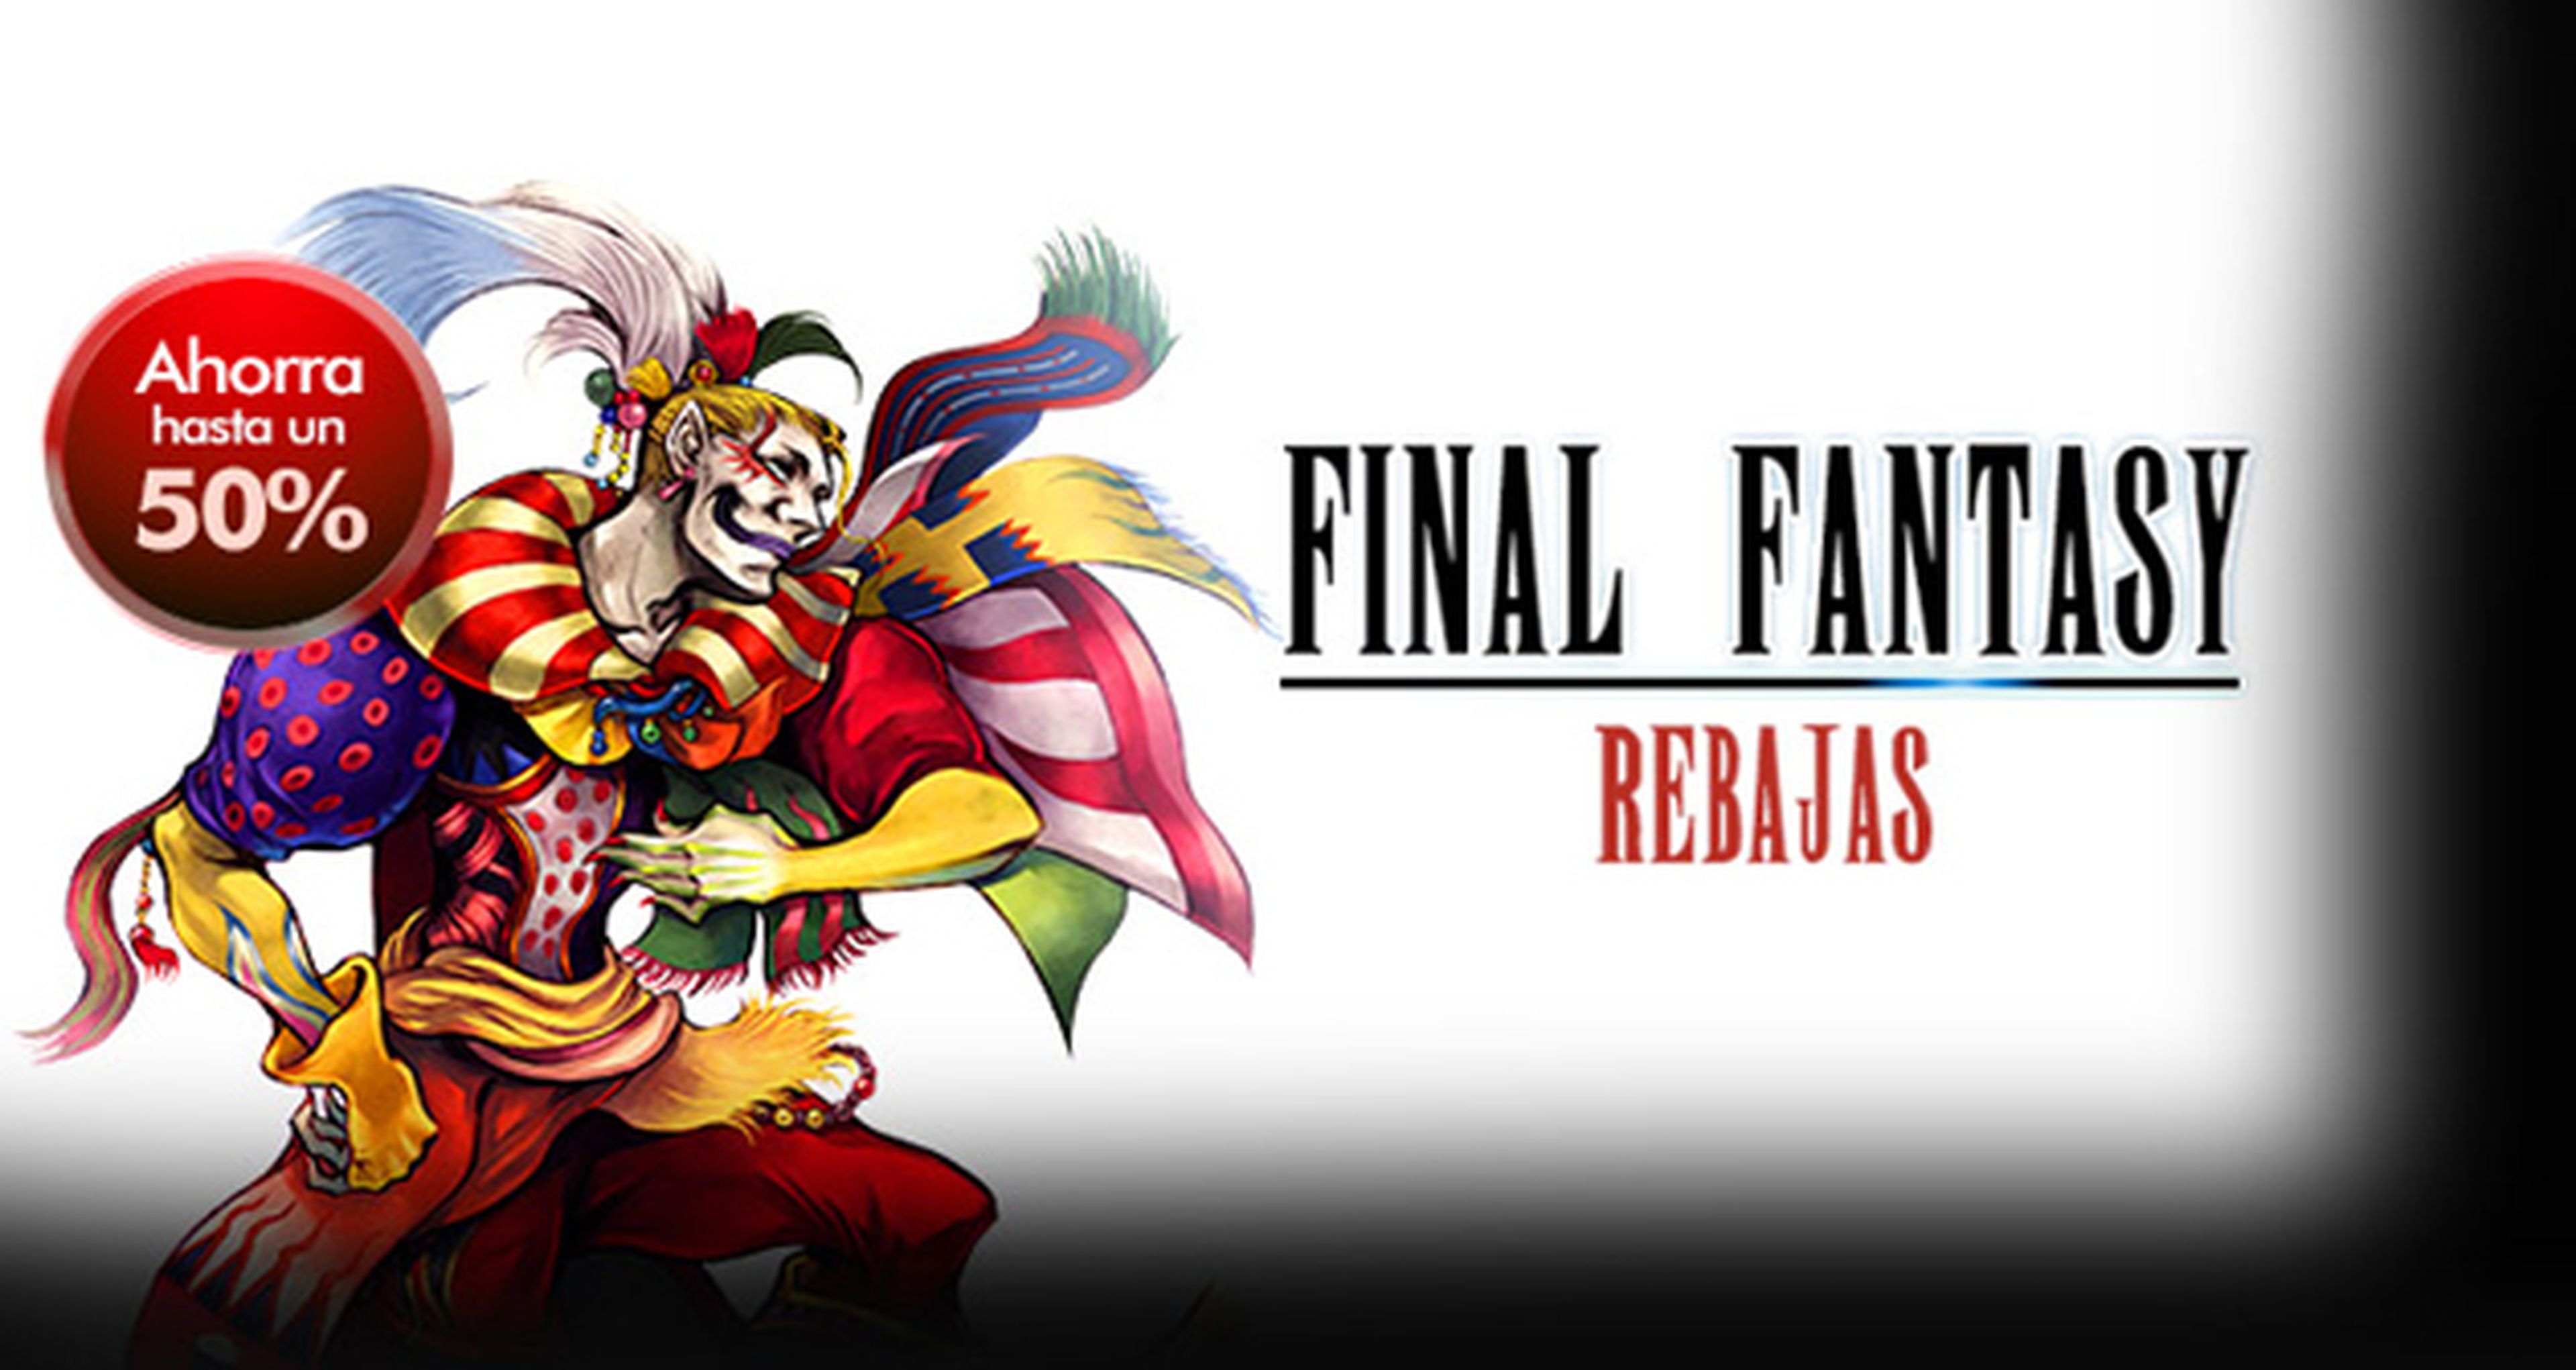 Las rebajas llegan a Final Fantasy